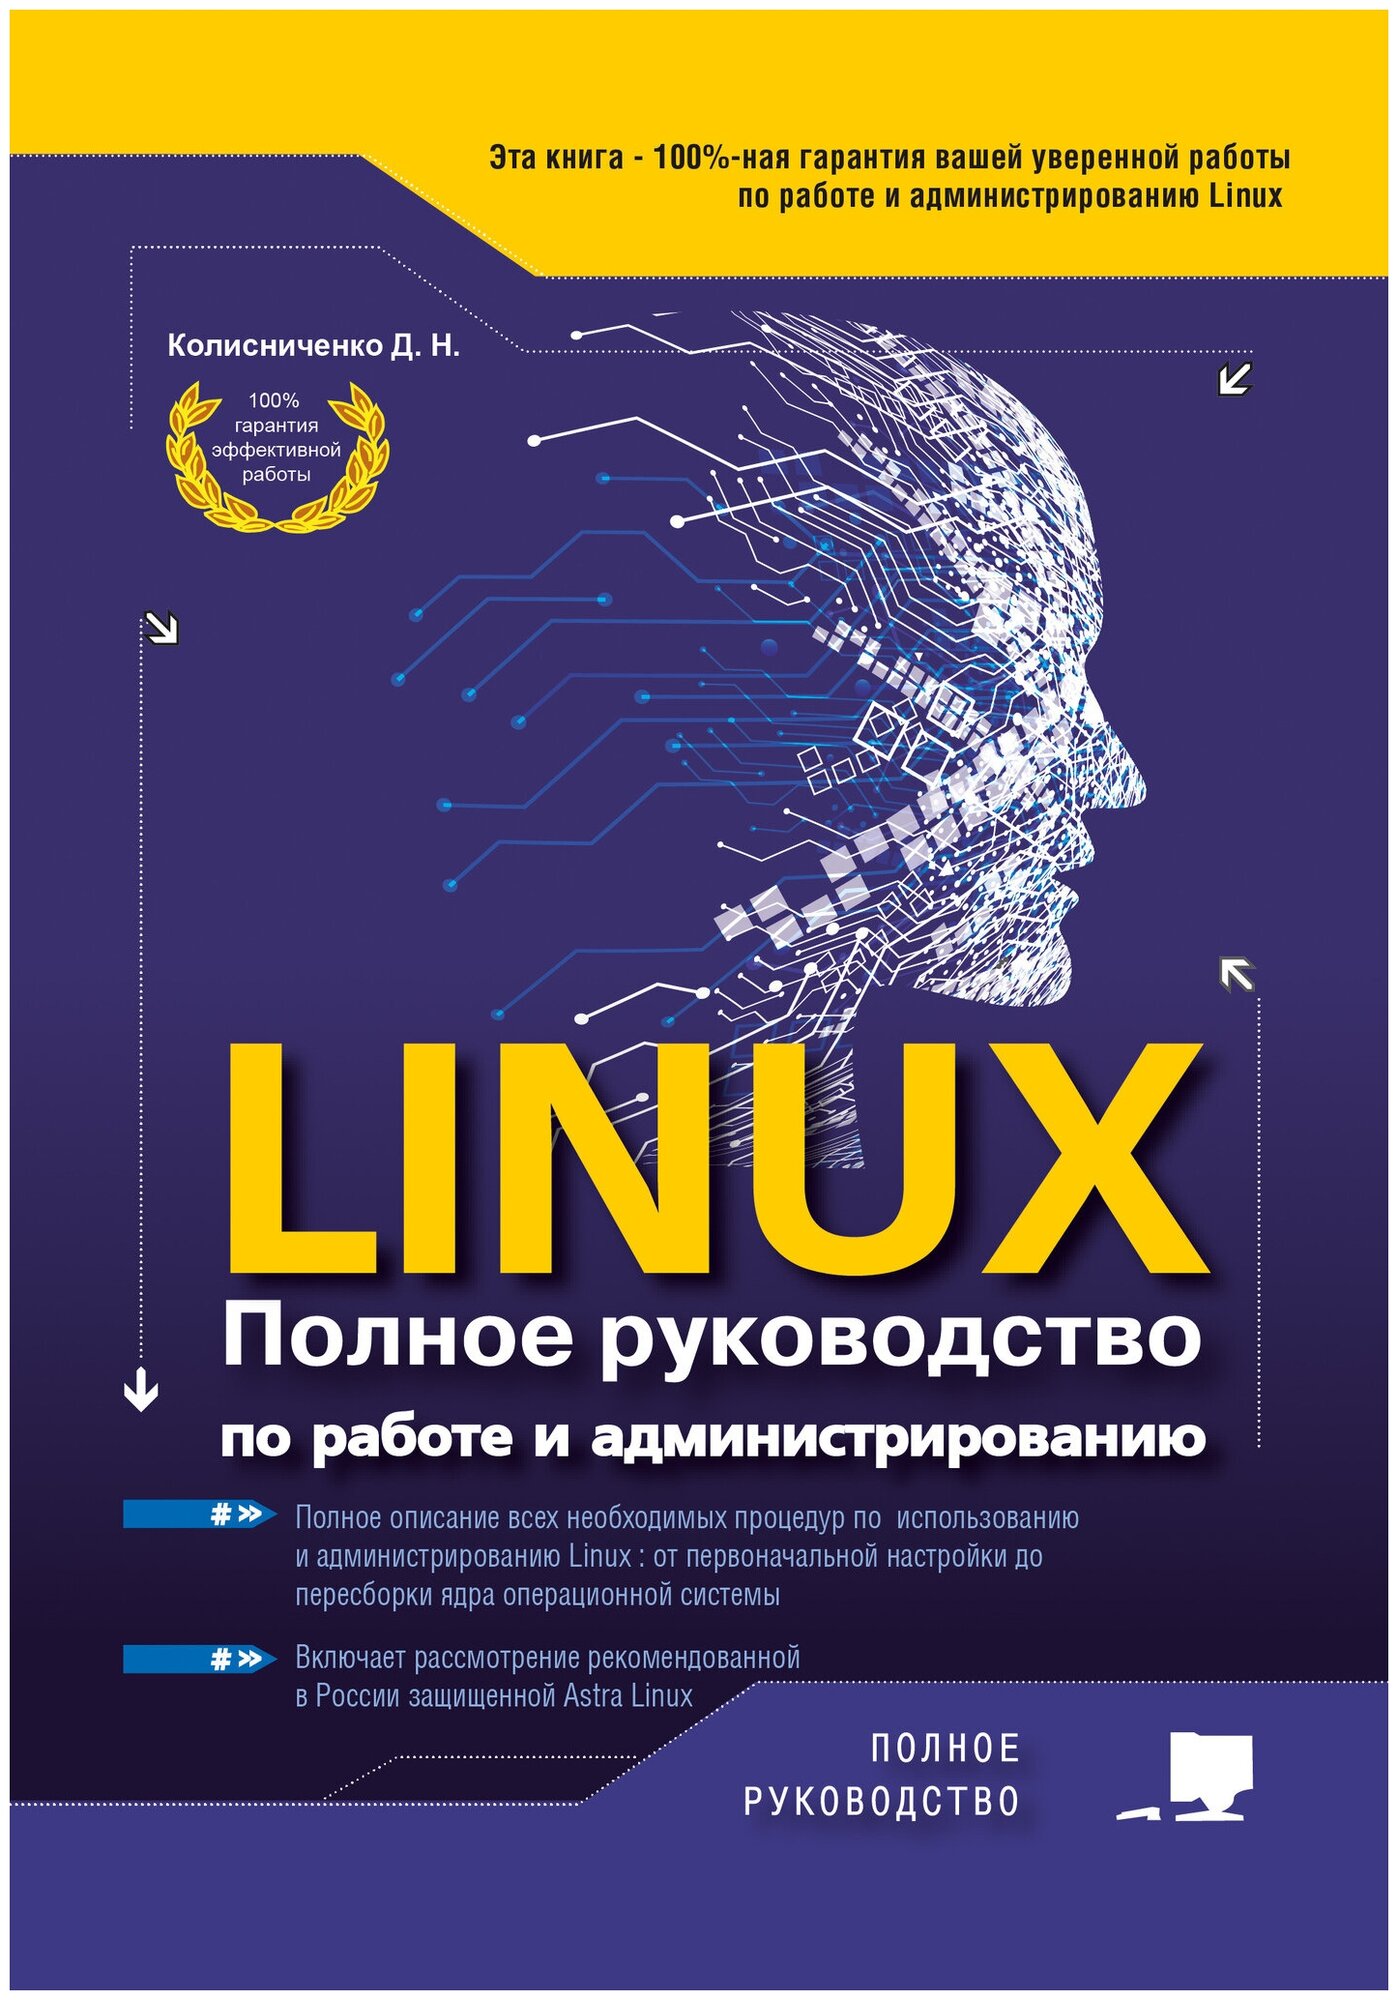 LINUX Полное руководство по работе и администрированию - фото №6